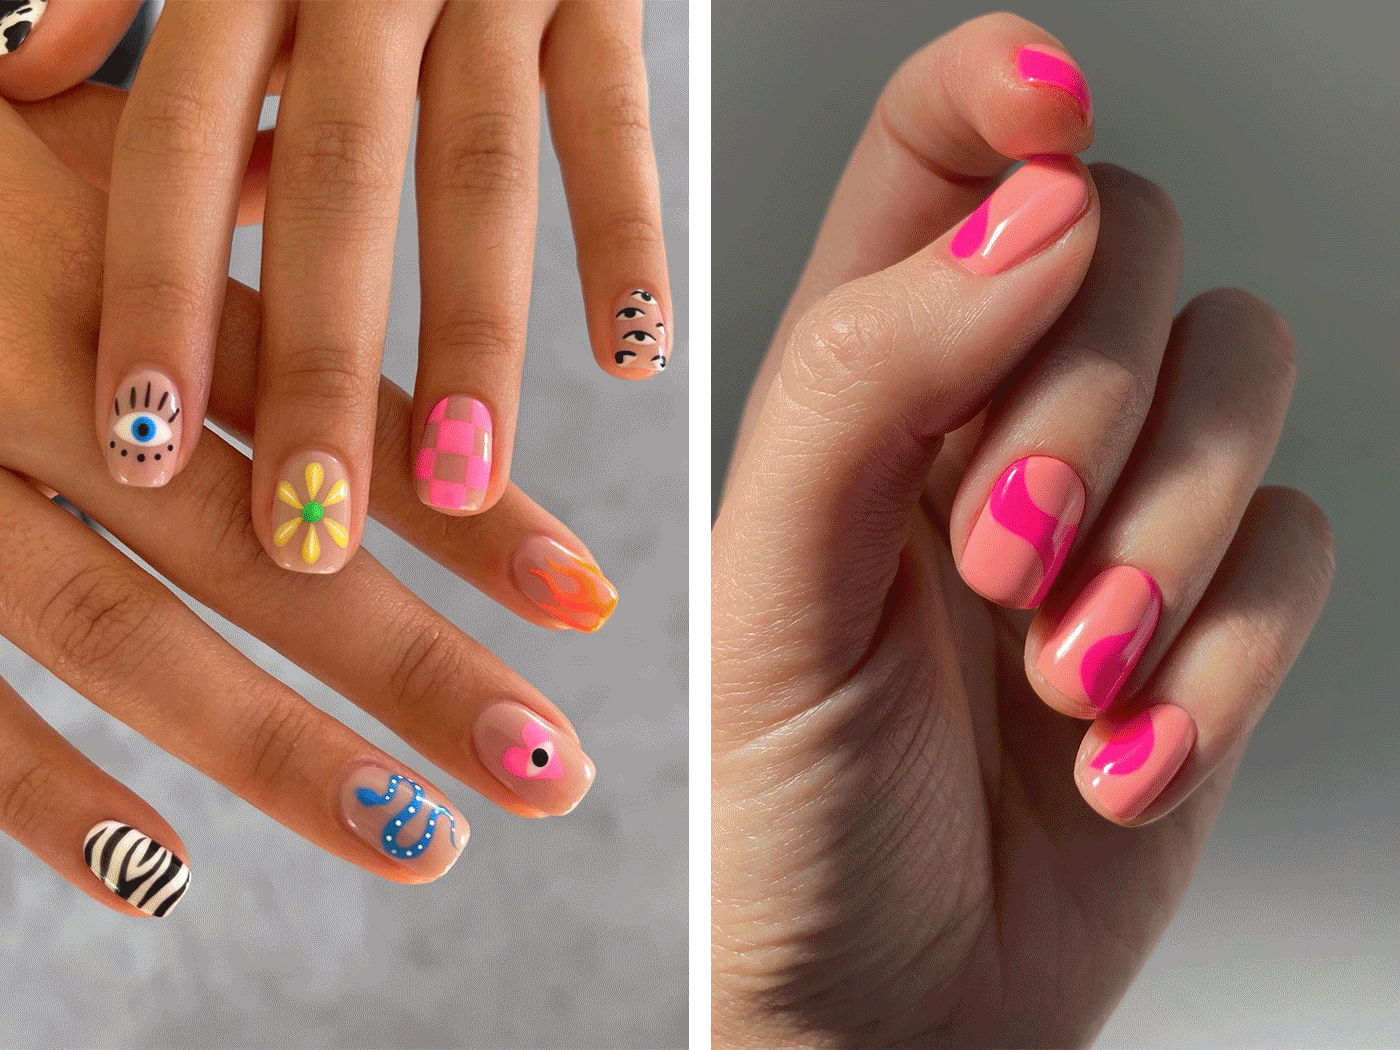 Τα πιο εντυπωσιακά nail art designs για κοντά νύχια